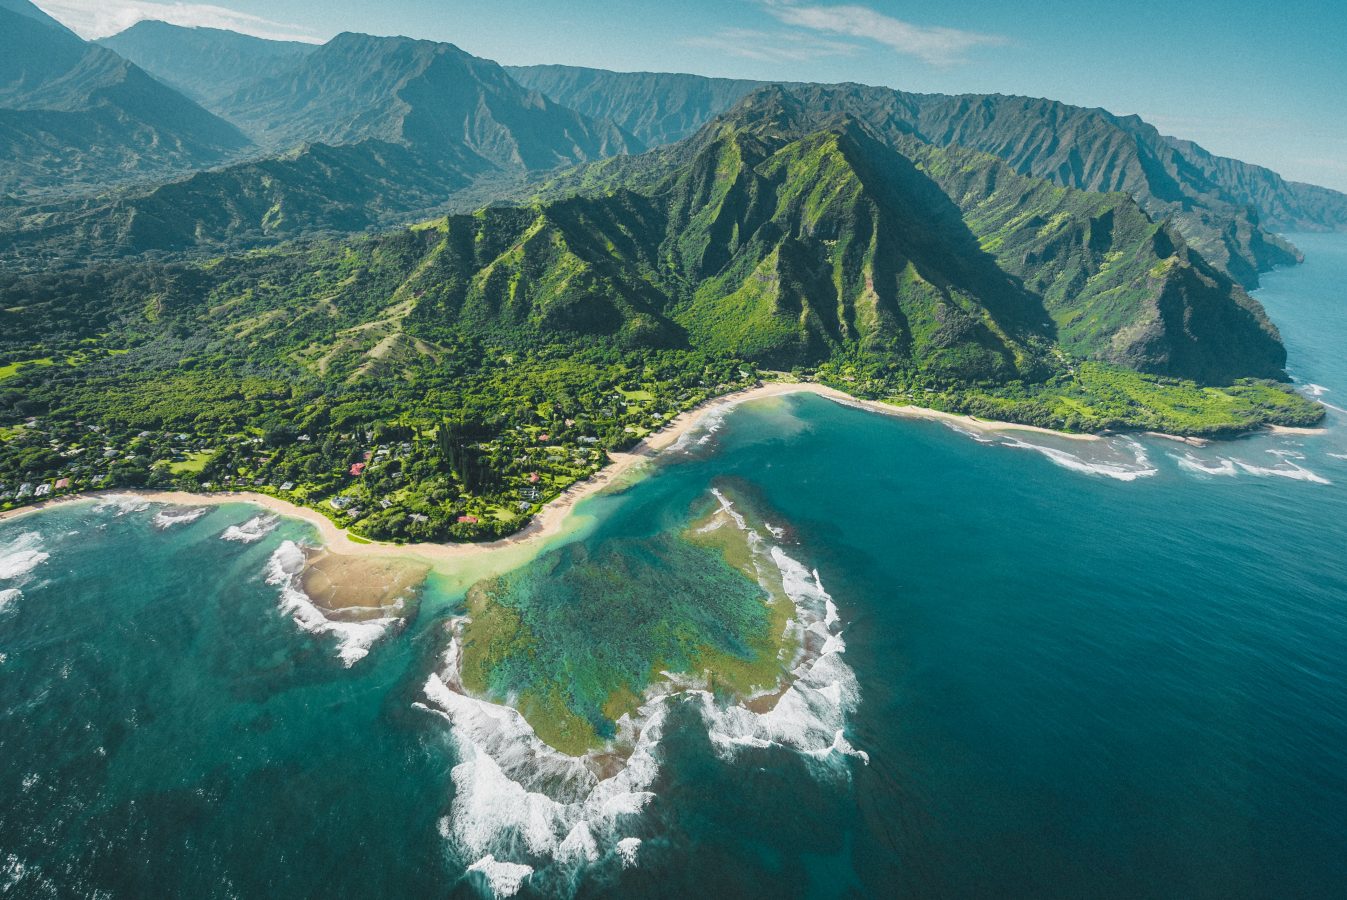 The coastline of Hawaii.